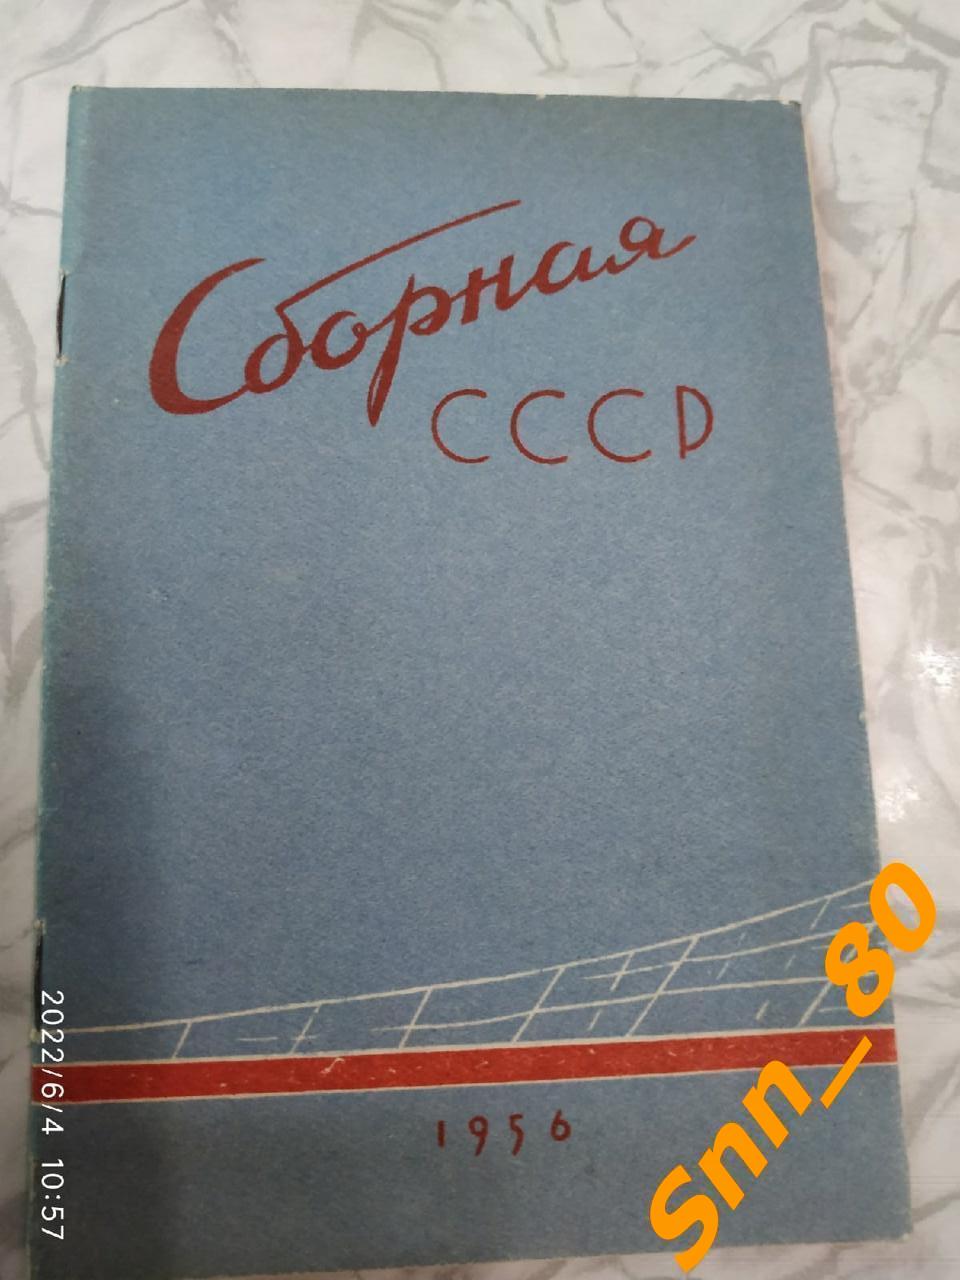 Календарь-справочник Сборная СССР 1956